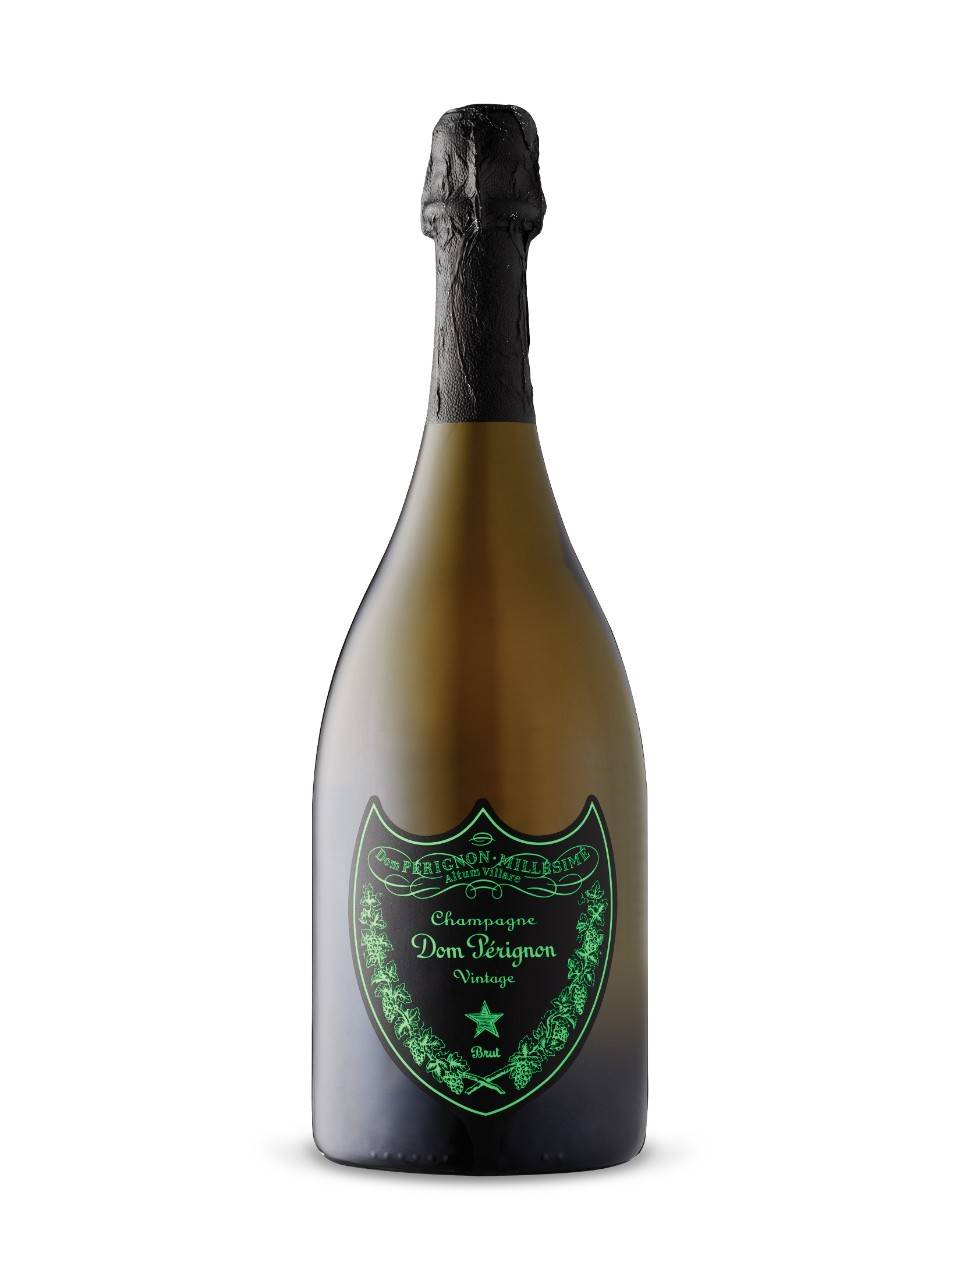 Шампанское дом периньон: вкусовые характеристики и виды элитного игристого вина из франции